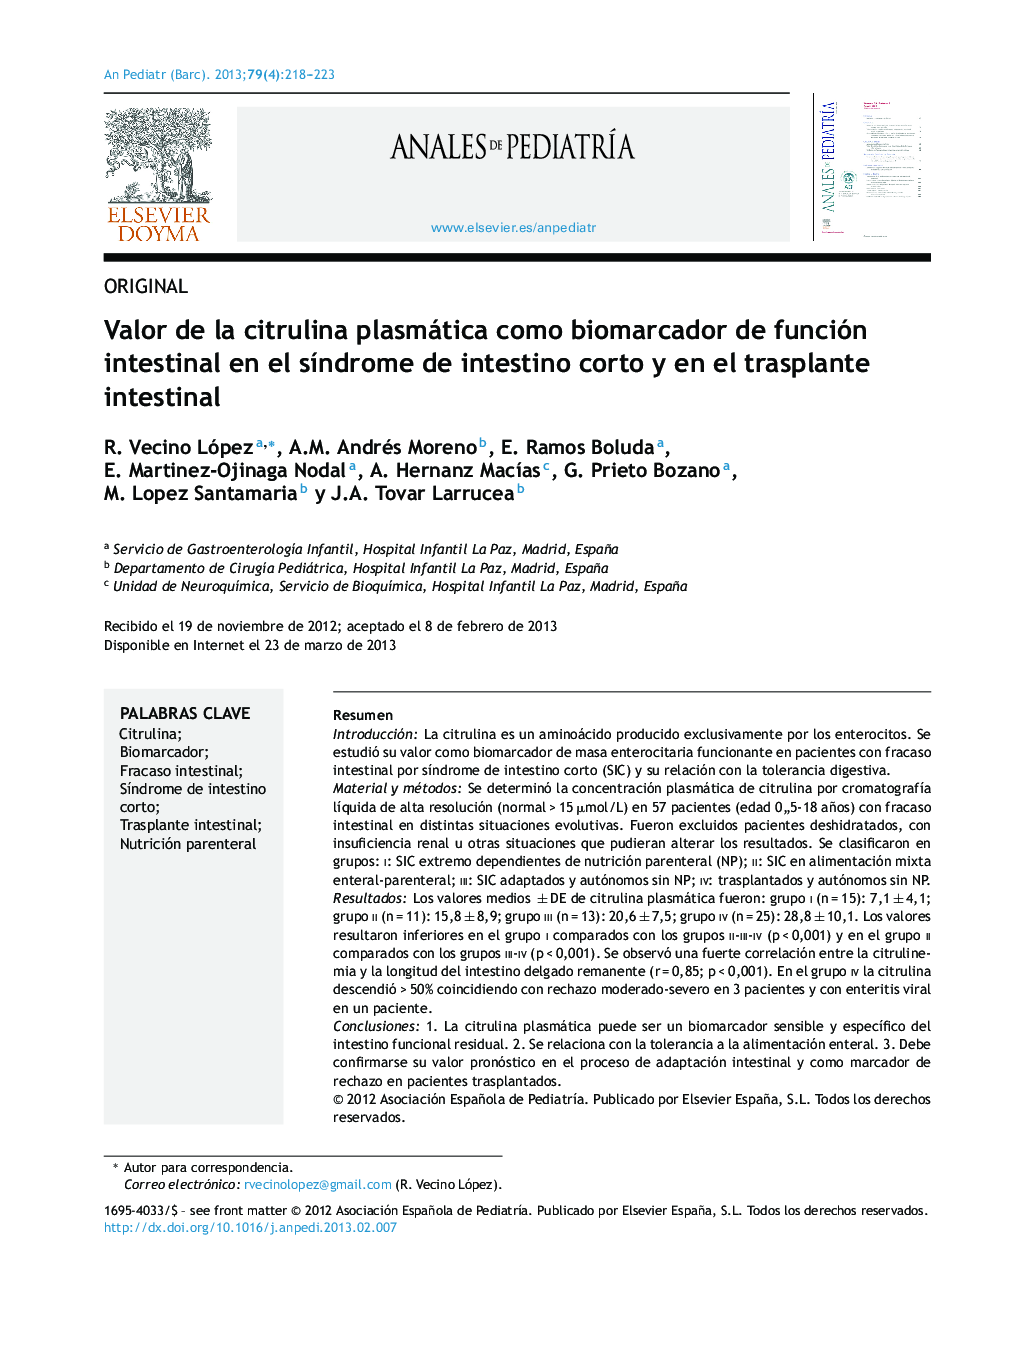 Valor de la citrulina plasmática como biomarcador de función intestinal en el síndrome de intestino corto y en el trasplante intestinal